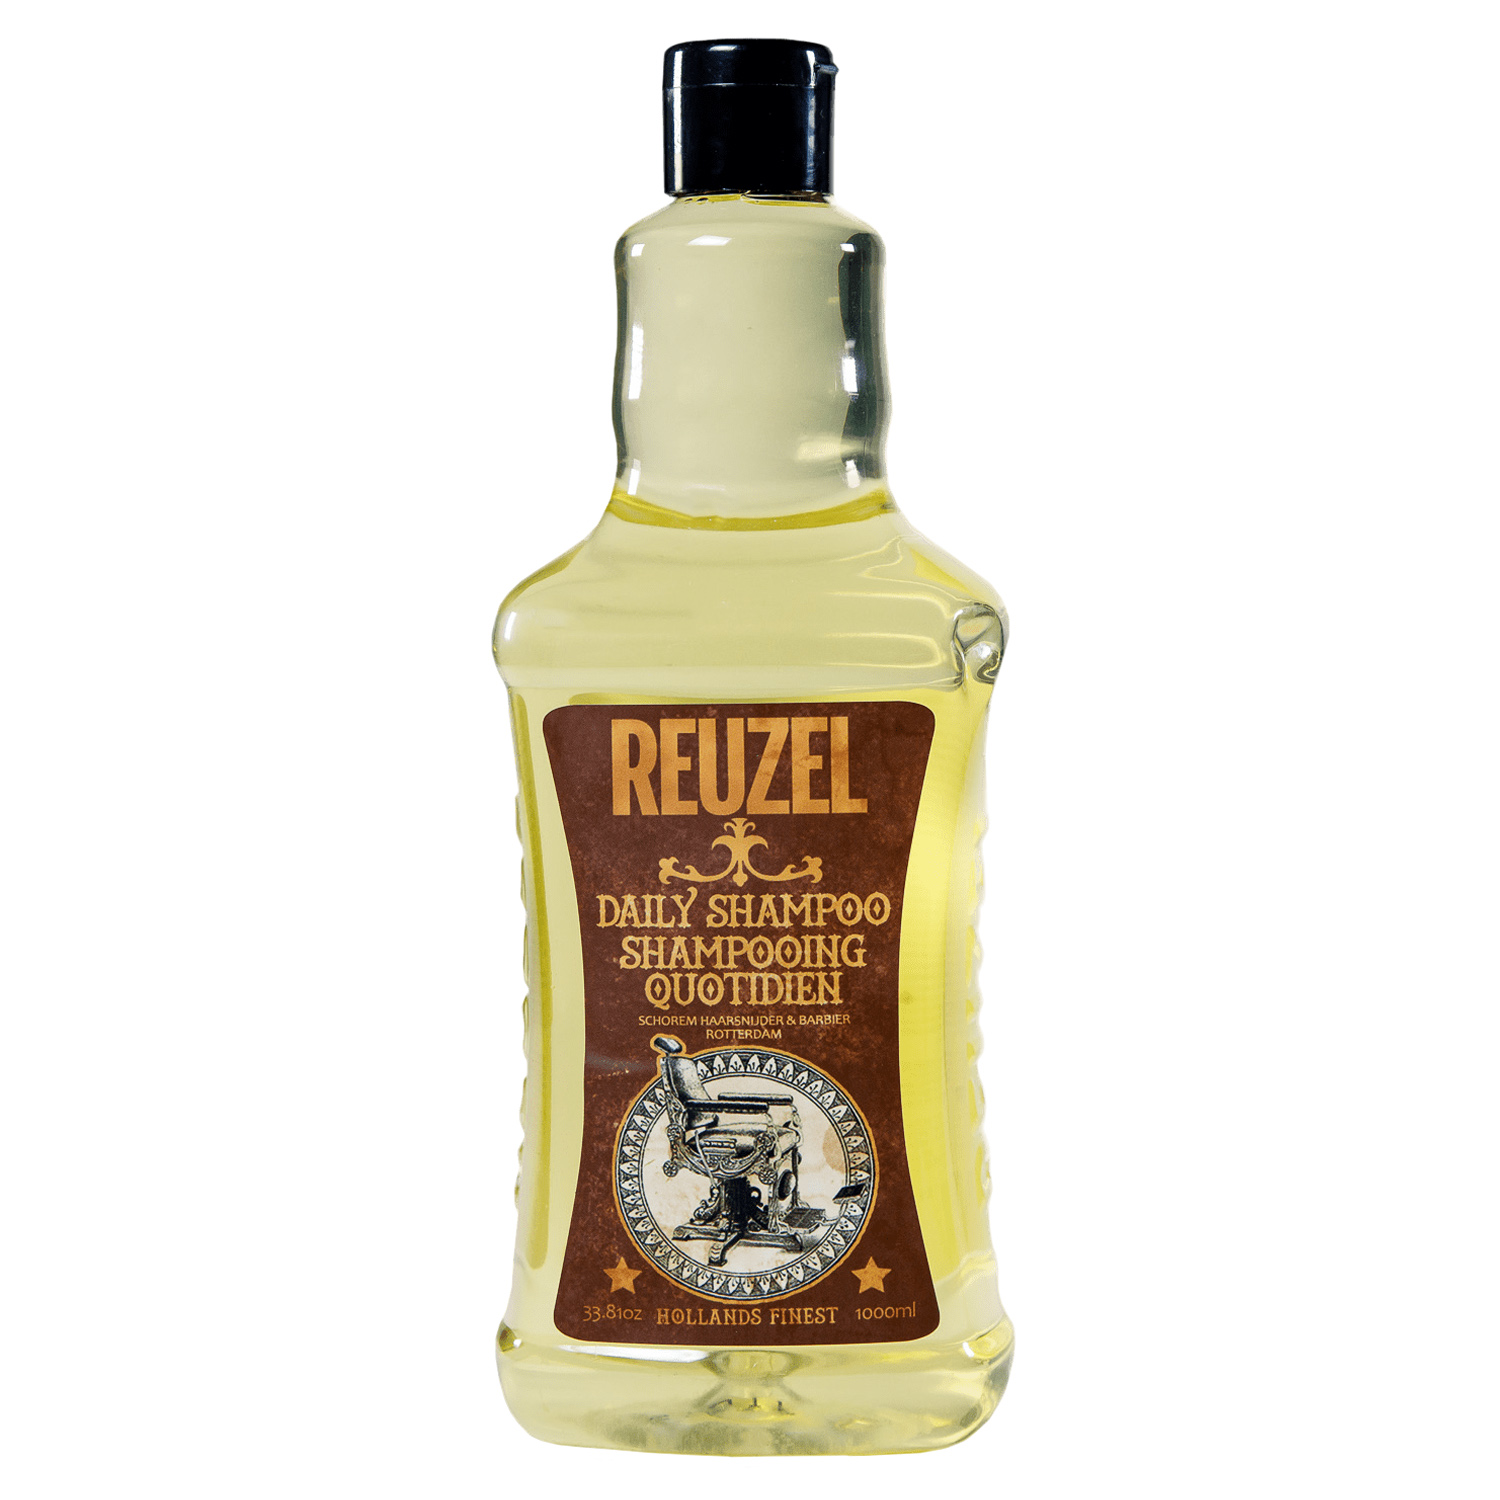 Купить Reuzel Мужской шампунь для частого применения Daily Shampoo, 1000 мл (Reuzel, Пеномойка), США